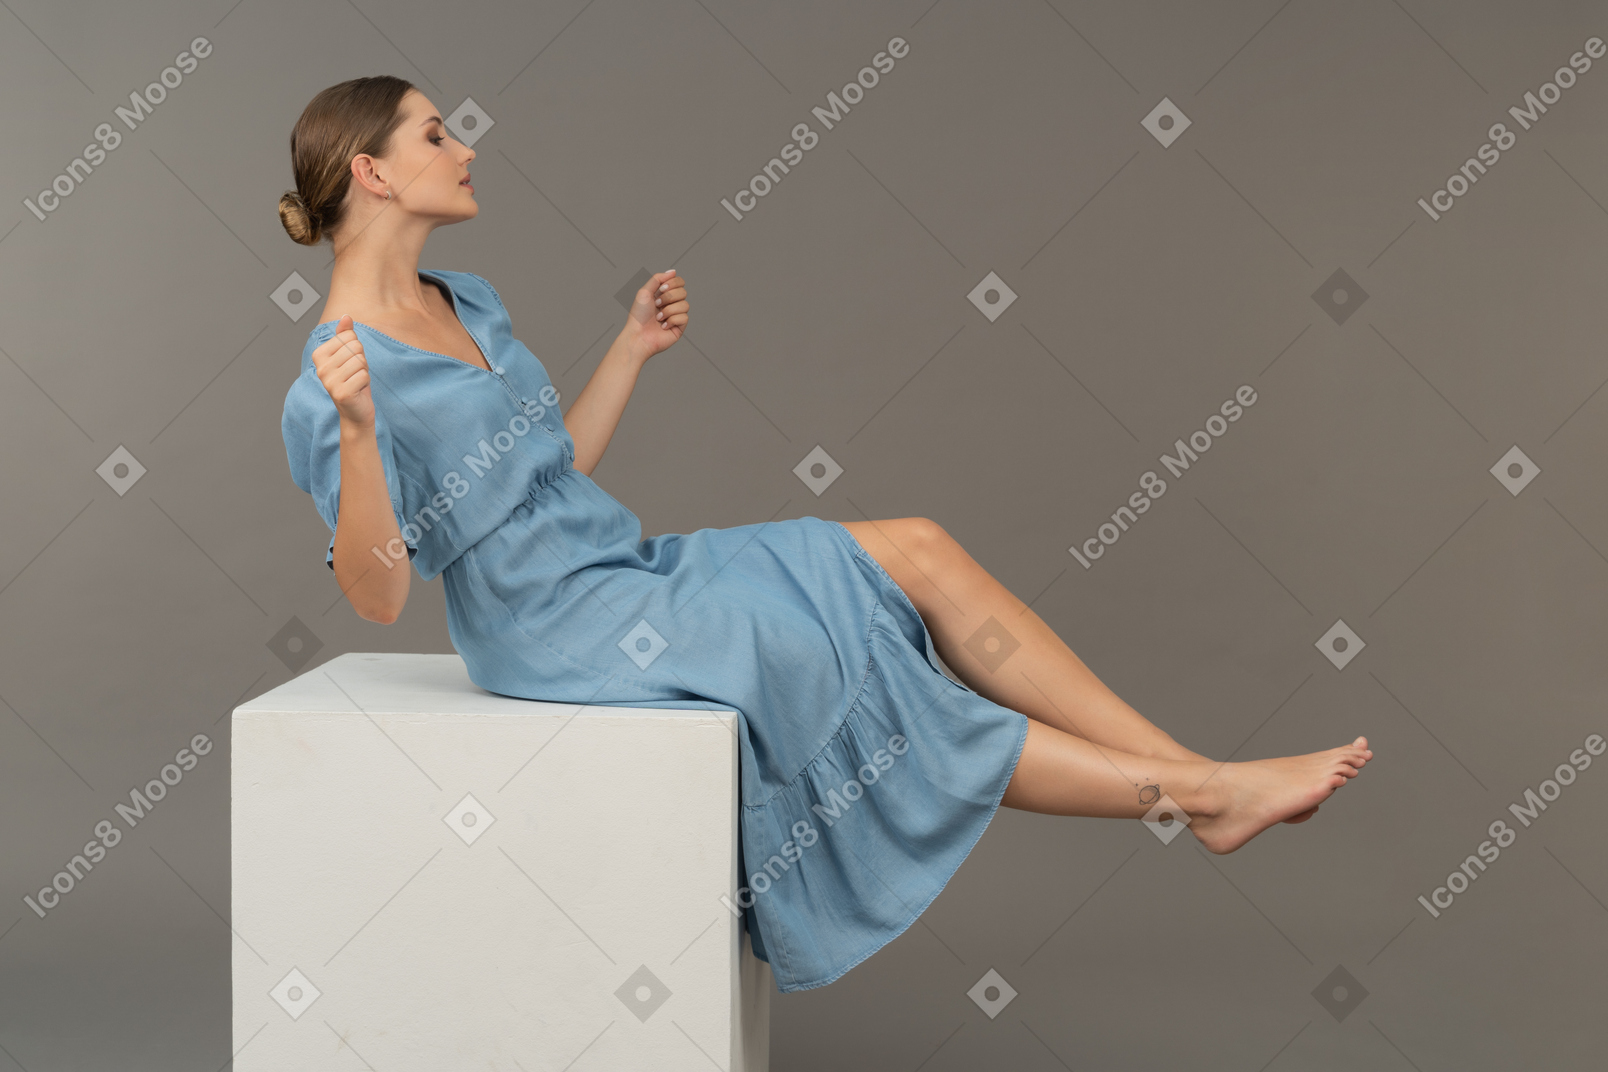 Vista lateral da jovem sentada no cubo e tentando manter o equilíbrio